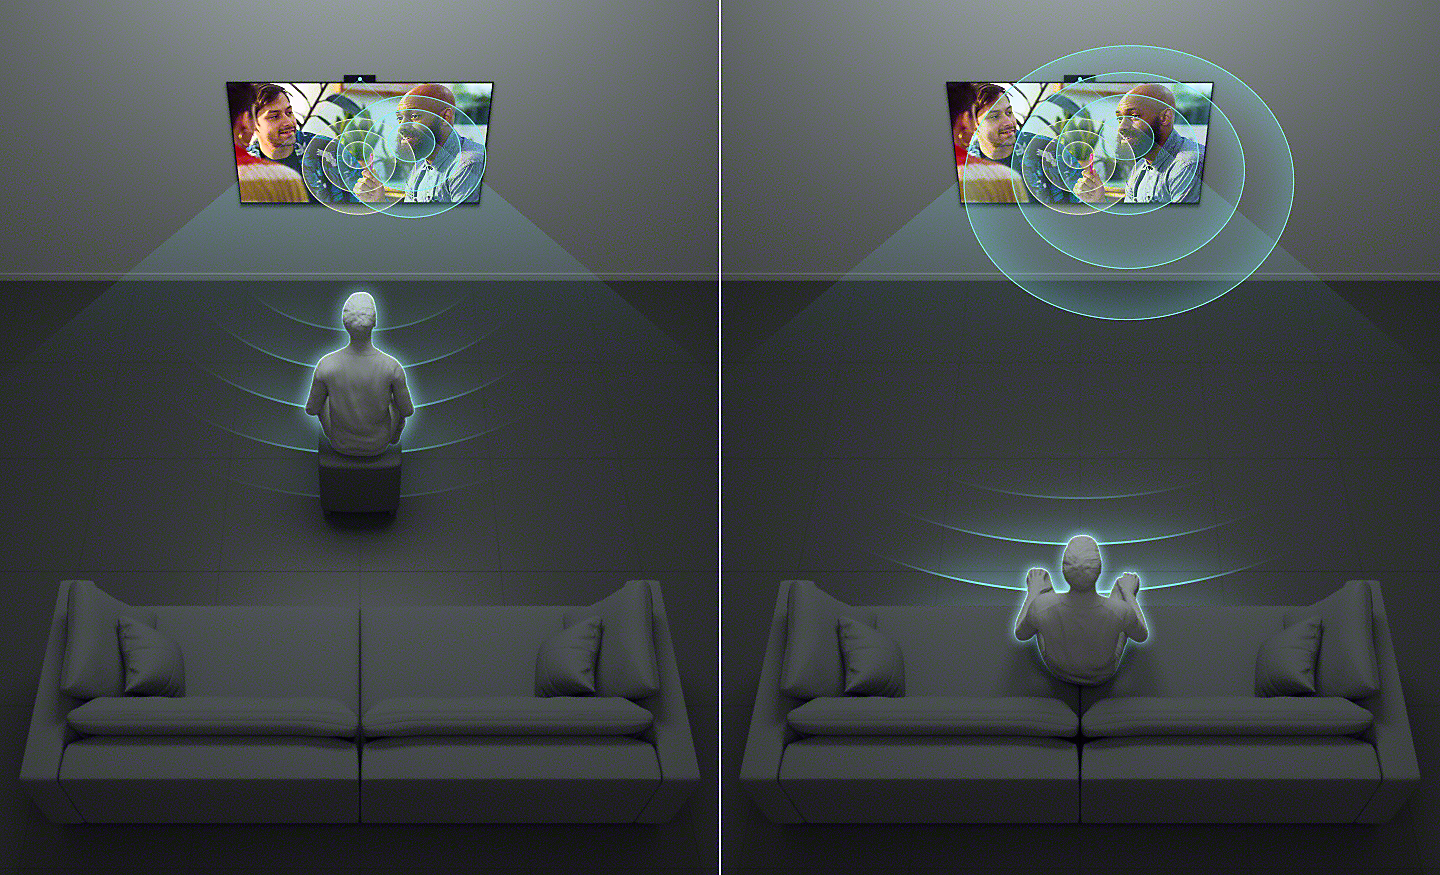 Dubbele afbeelding van iemand die tv kijkt vanuit verschillende posities: zittend dicht bij het scherm en verder weg zittend